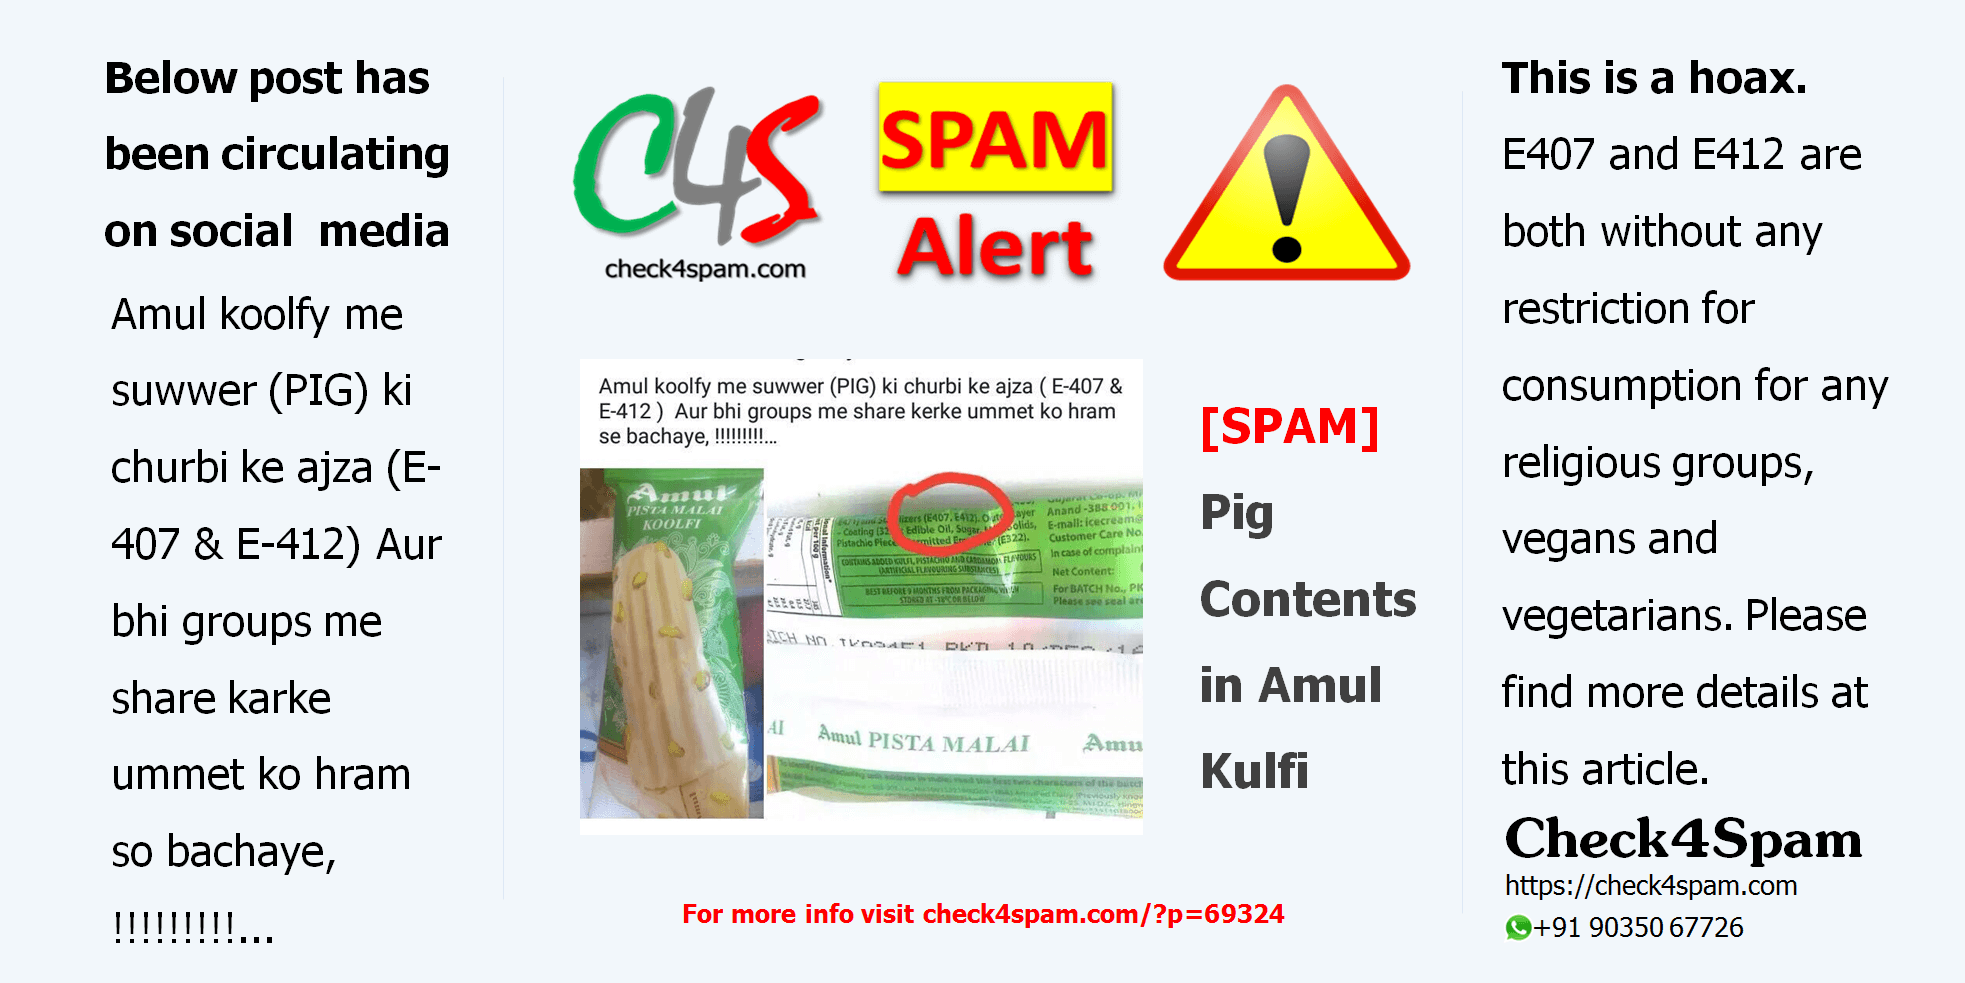 Amul Kulfi pig contents E407 E412 - SPAM